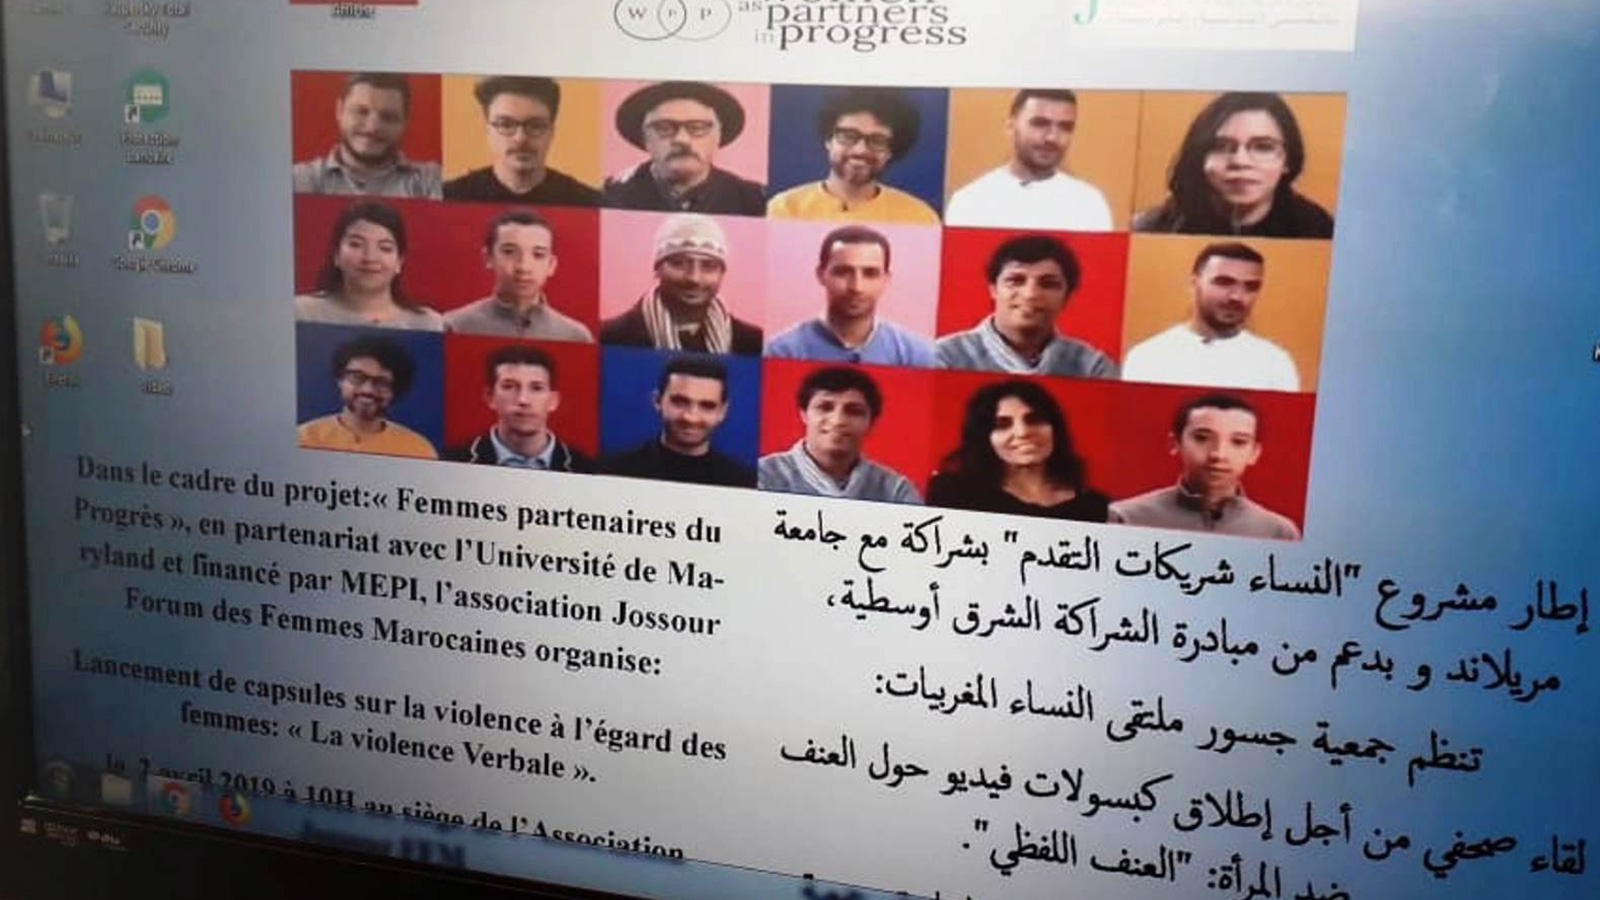 ‪‬  ملصق إعلاني حول حملة جمعية جسور ضد العنف اللفظي وتتضمن صور بعض الفنانين والناشطين المتطوعين في الحملة(الجزيرة)